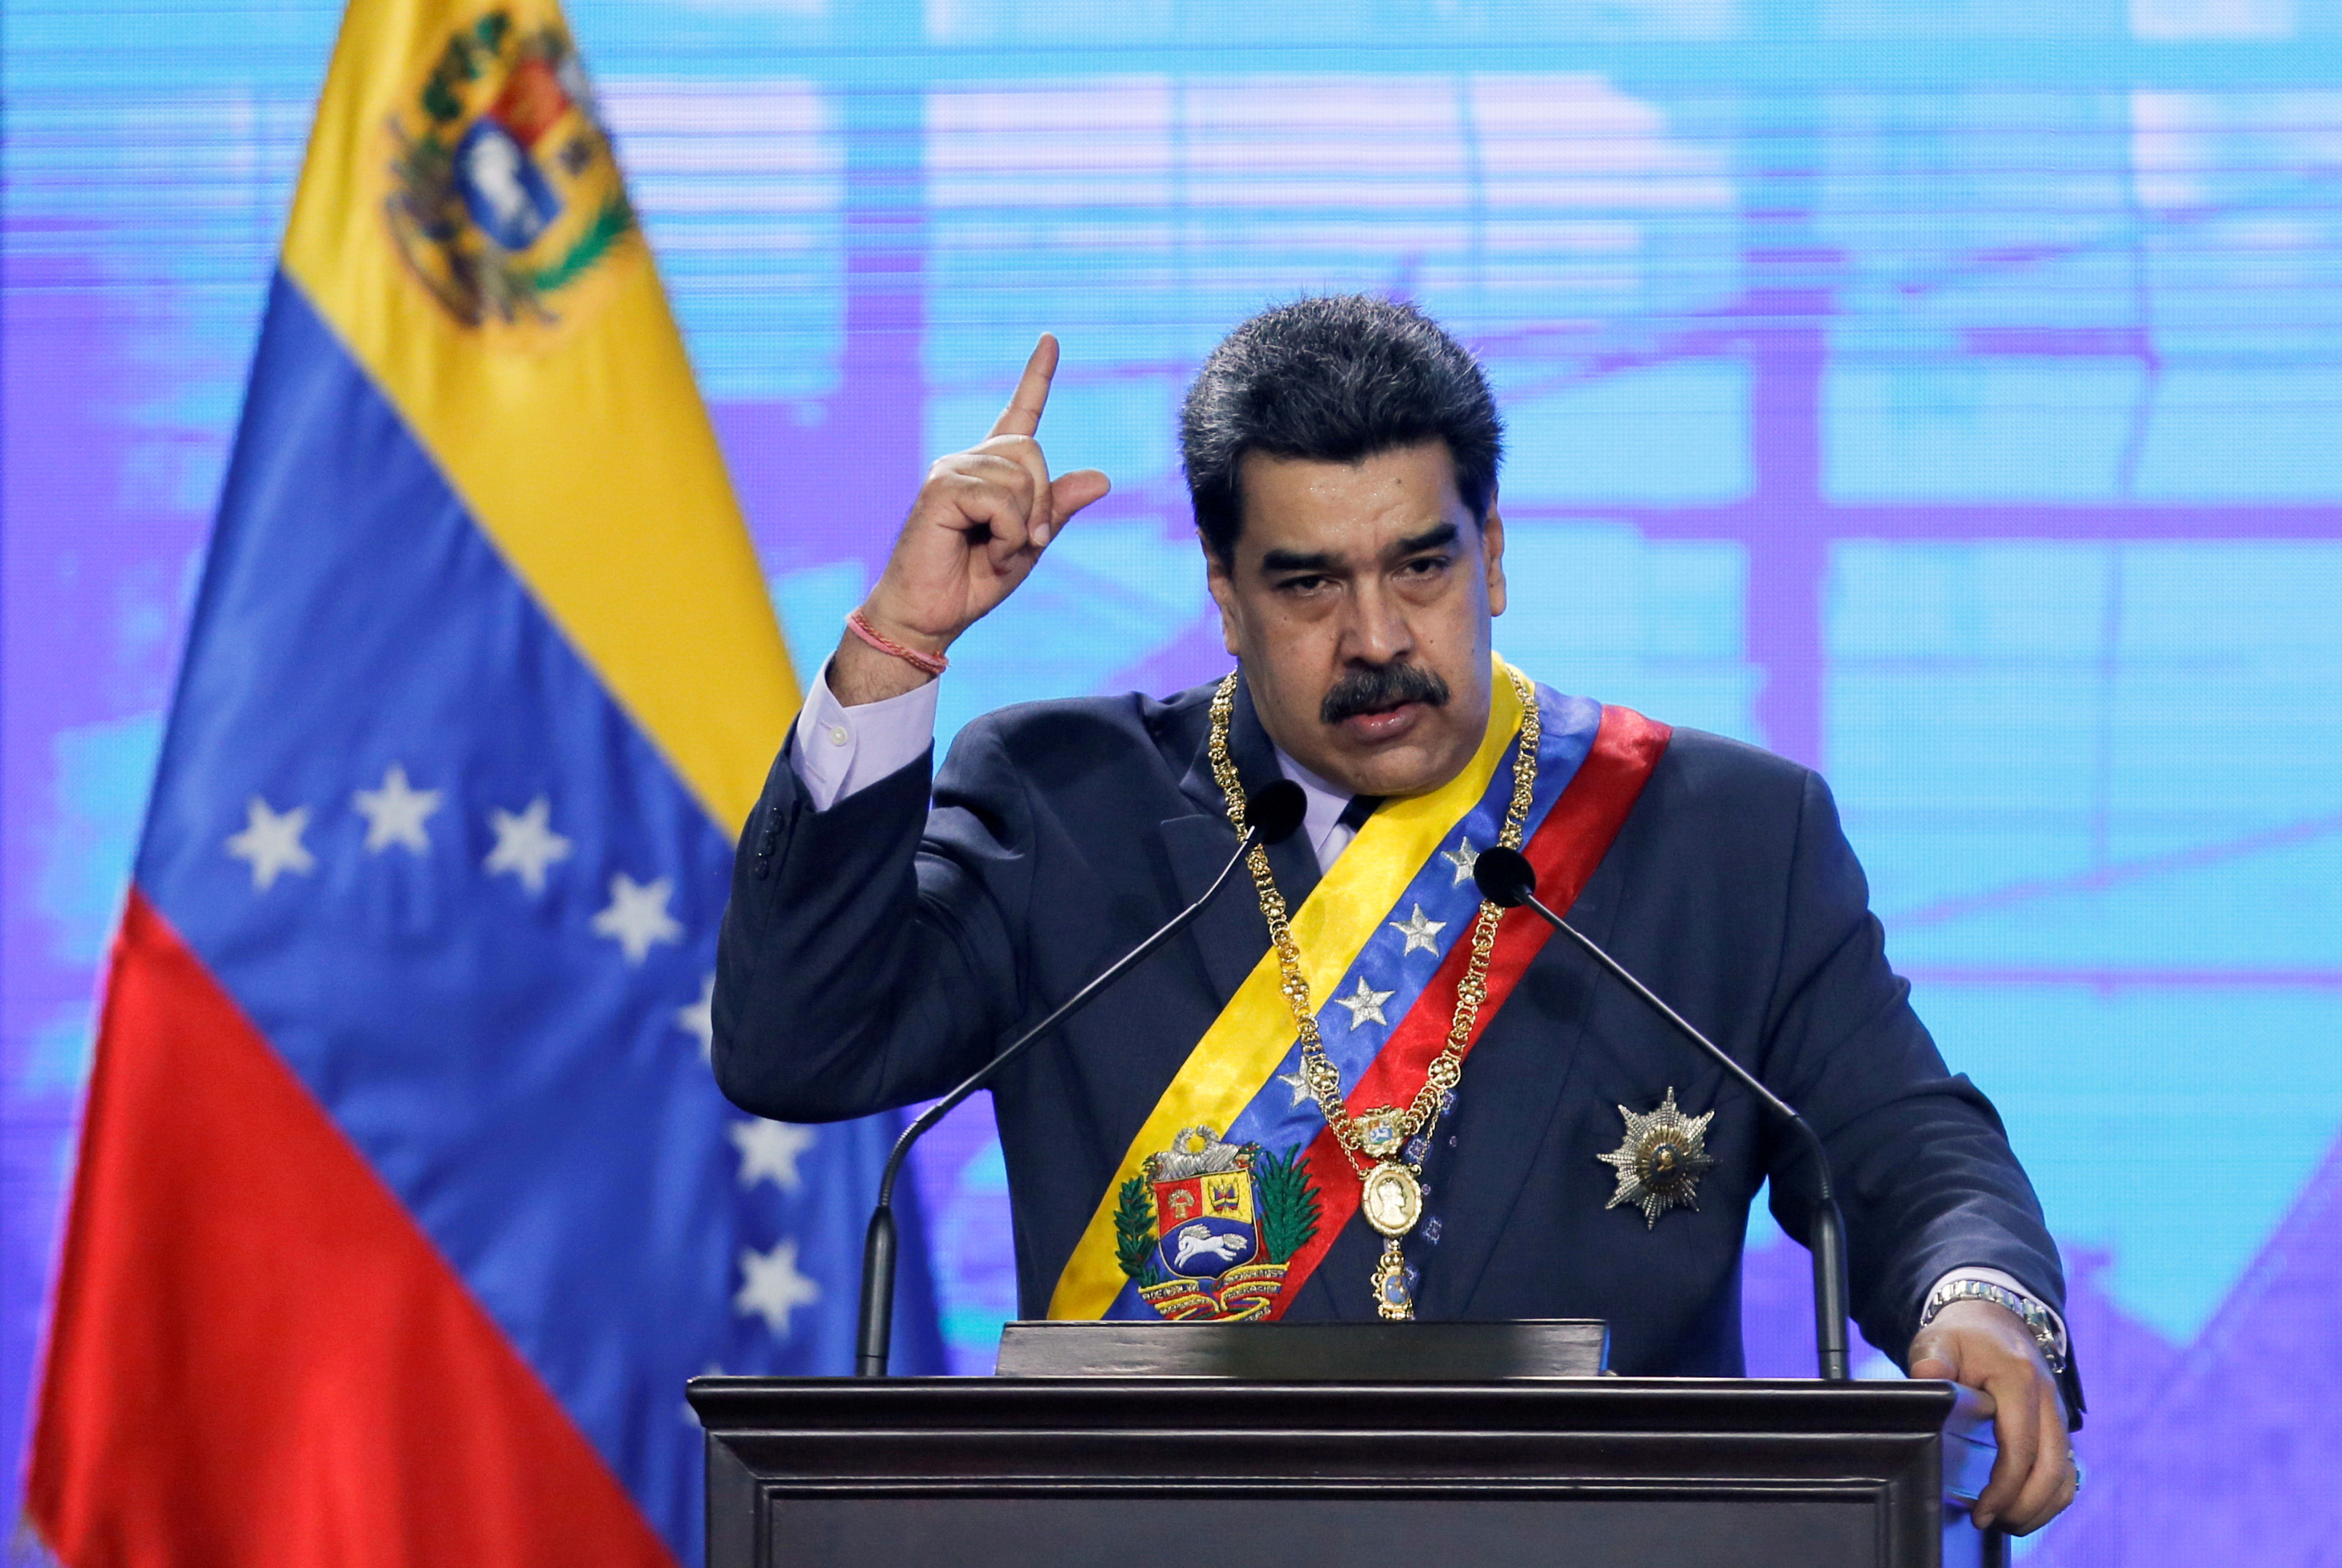 El régimen de Maduro violó las leyes de EEUU: la inteligencia chavista espió a los ejecutivos de Citgo en suelo norteamericano antes de arrestarlos